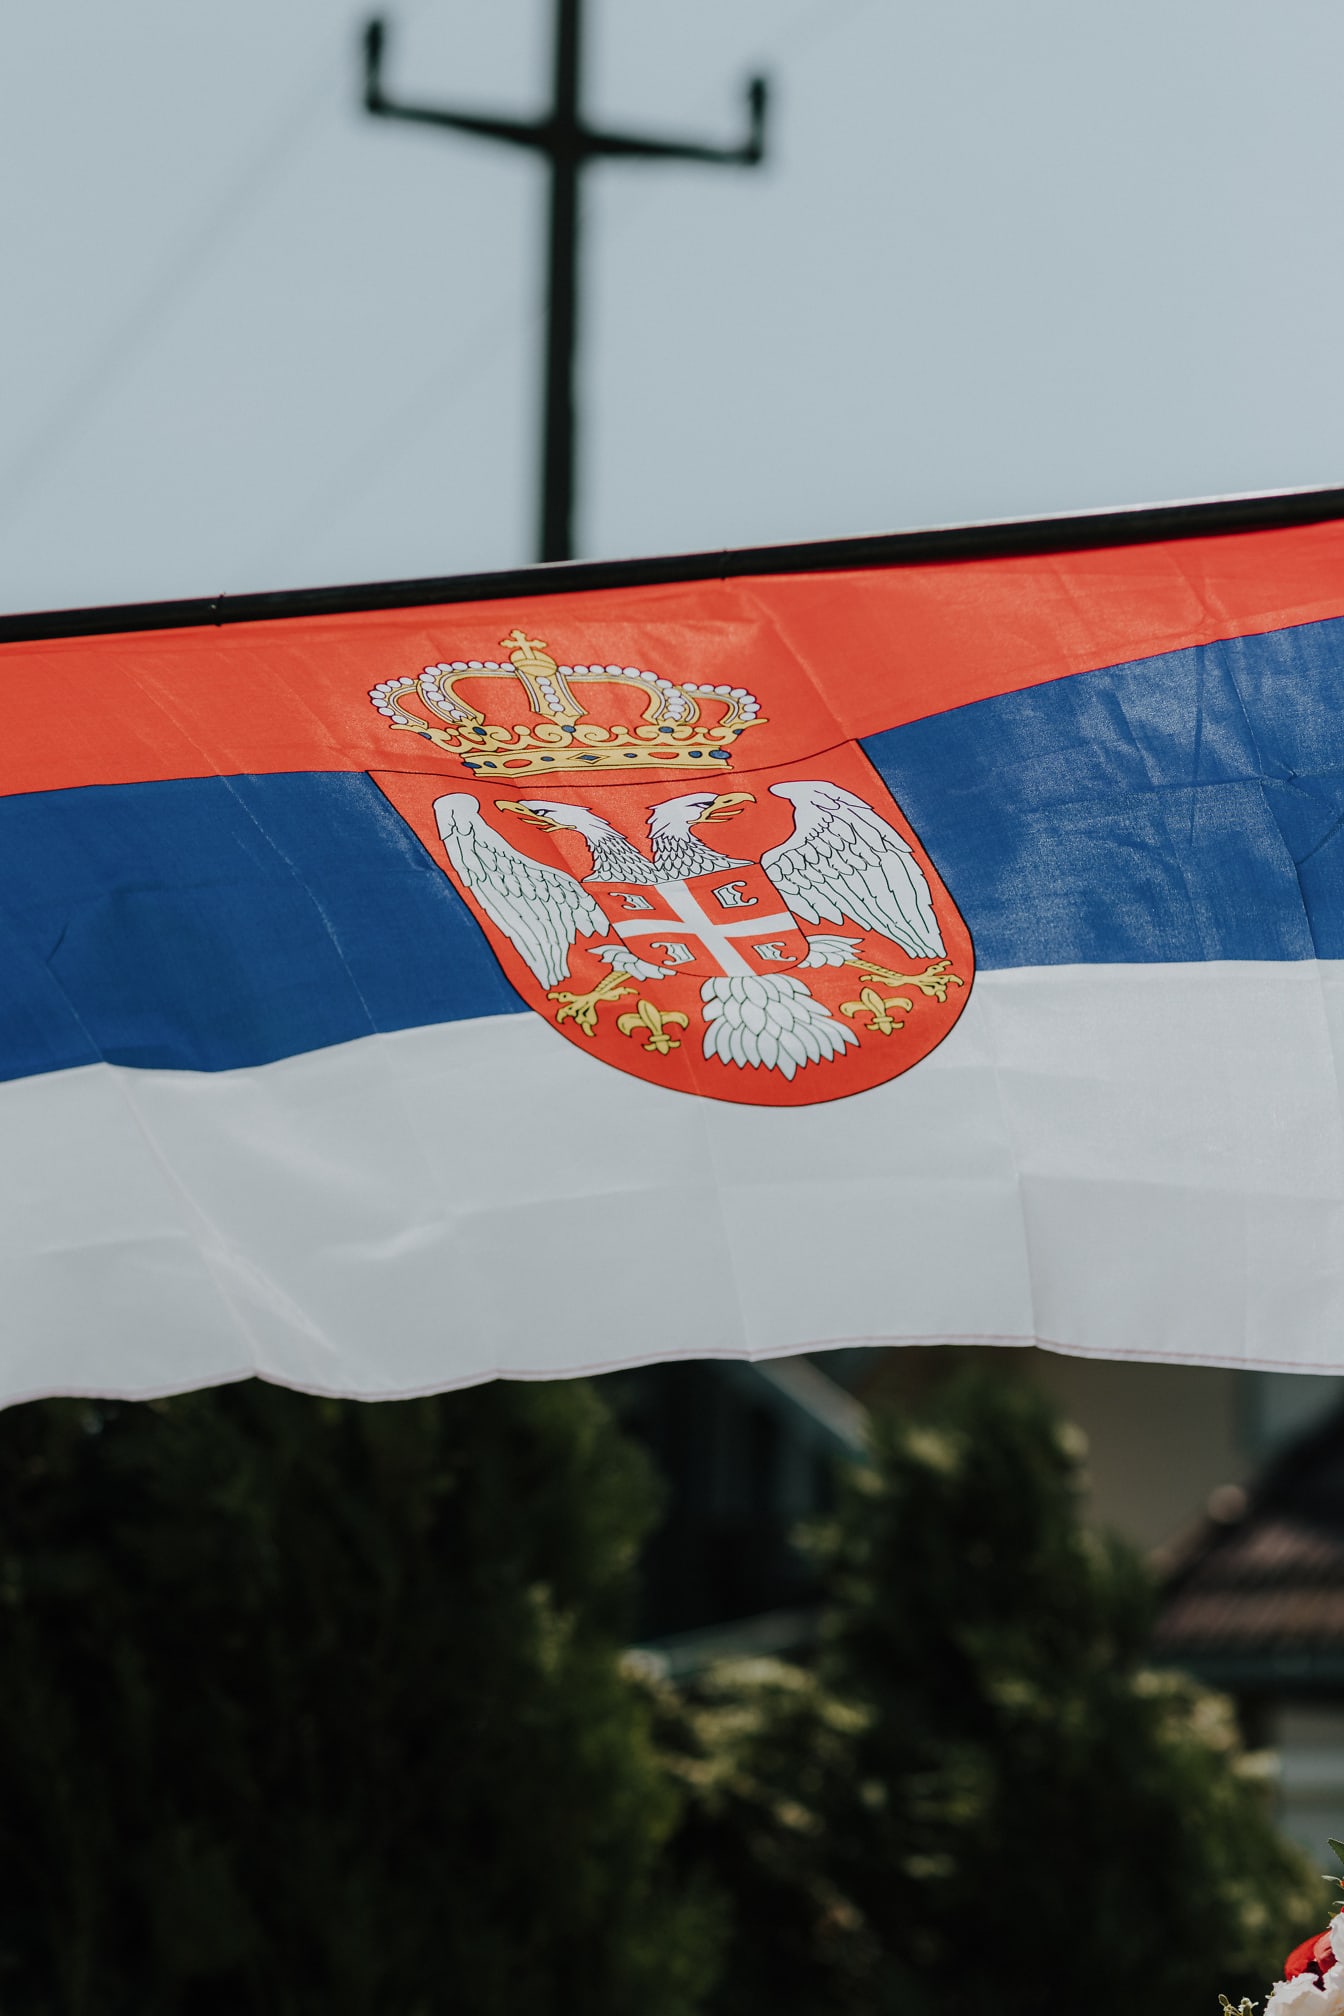 Bendera Serbia dengan elang heraldik berkepala dua